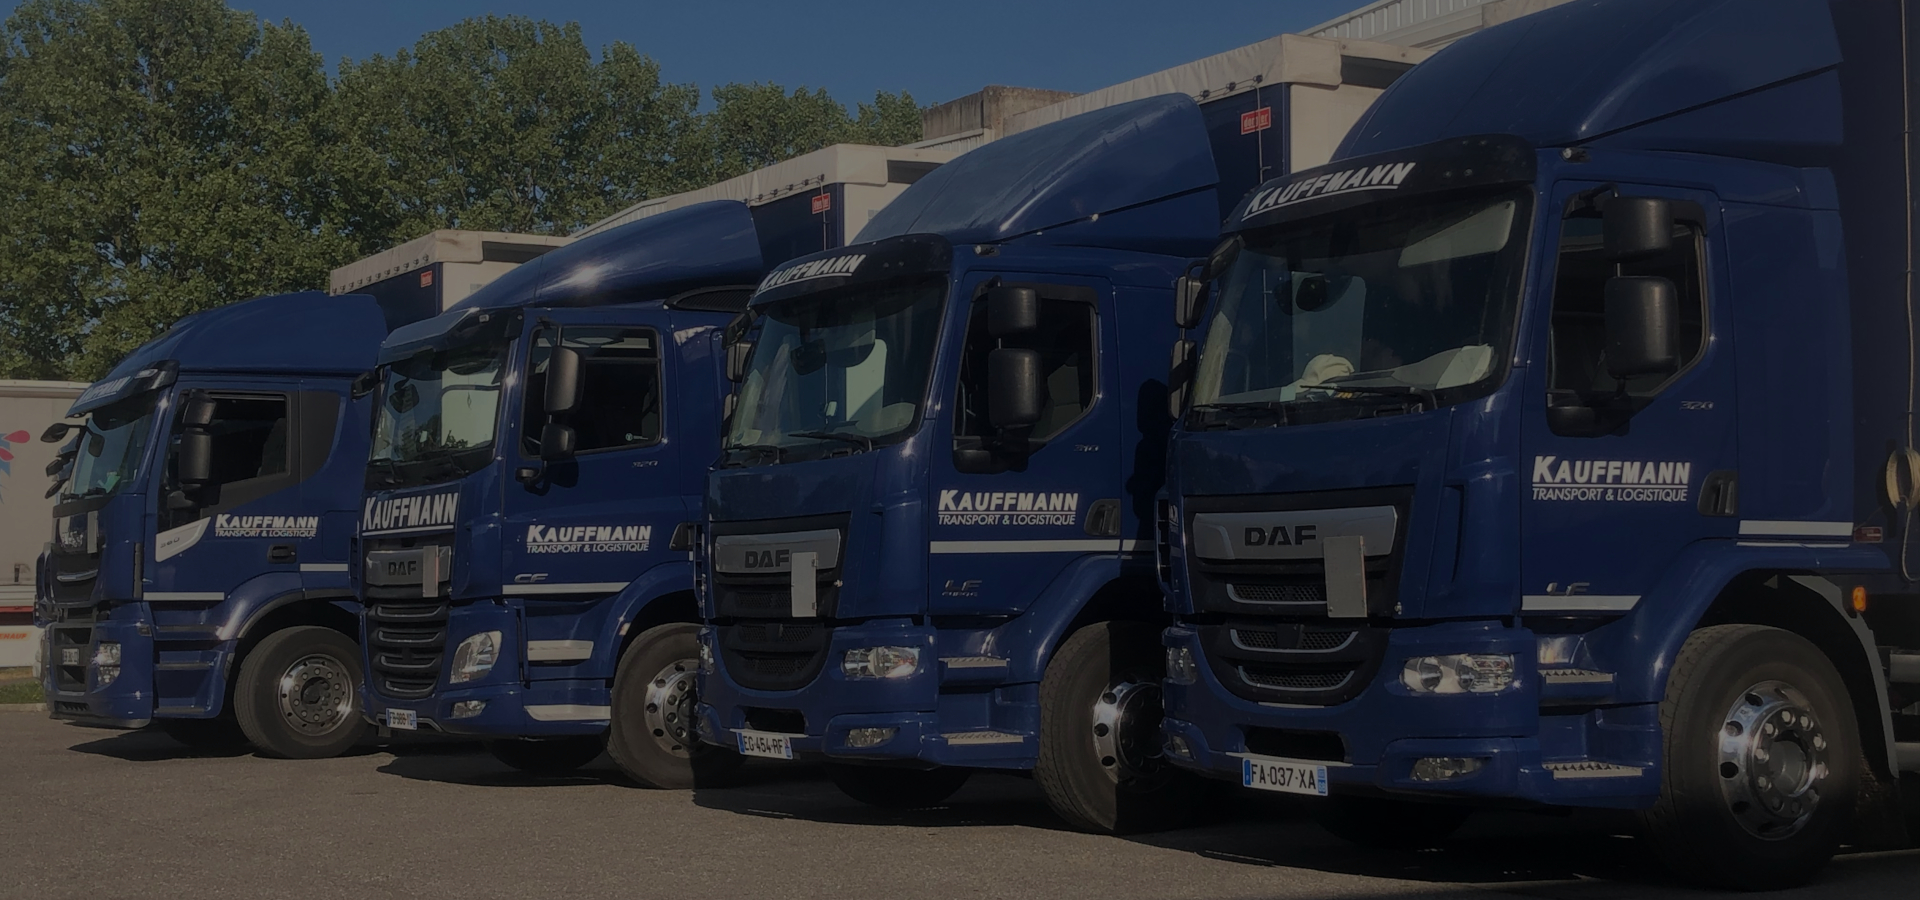 Kauffmann - Transport de marchandise et plateforme logistique en Alsace, Franche-comté et Vosges - Haut-Rhin